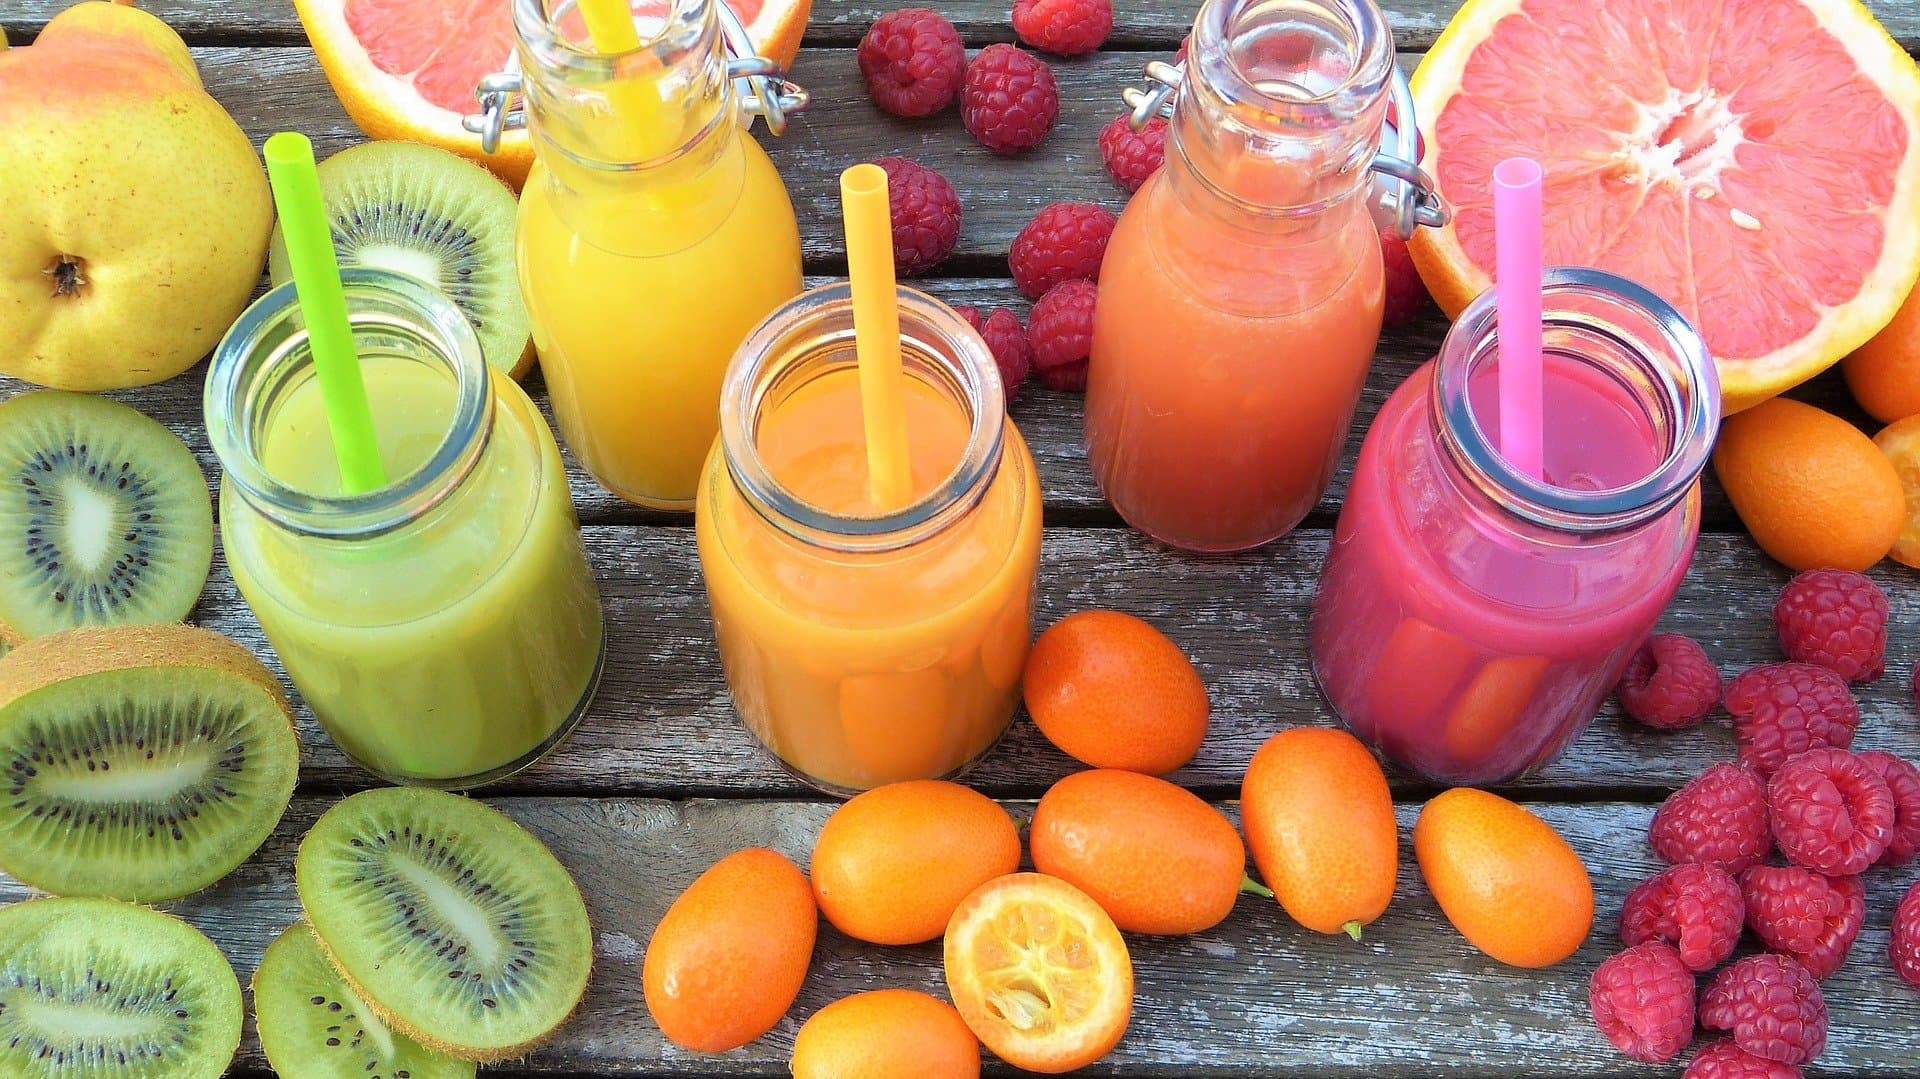 Making fruit juices